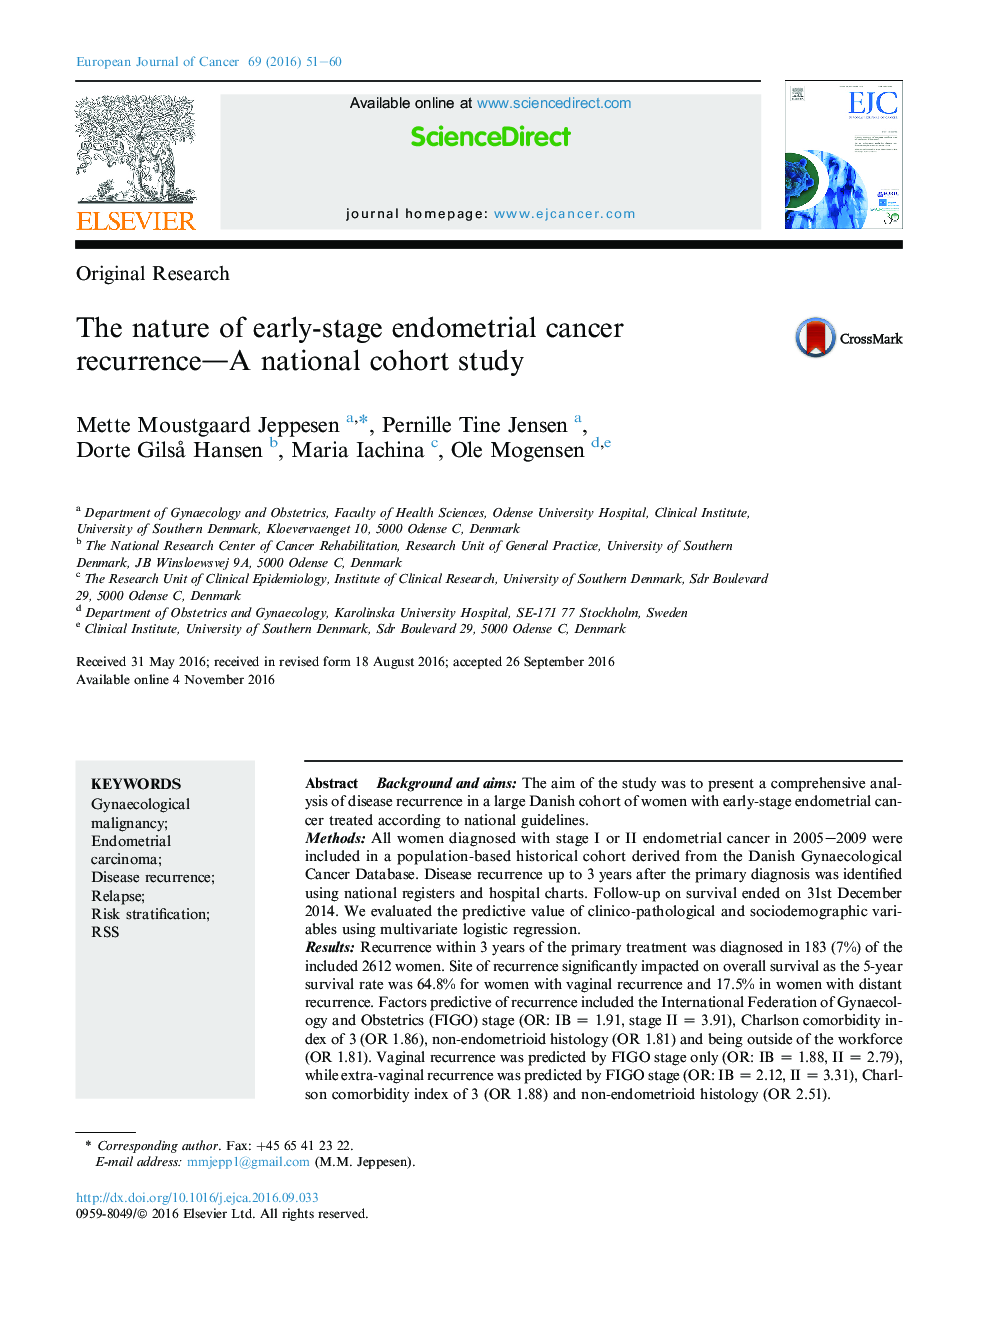 تحقیقات اصلی طبیعت عود مجدد سرطان آندومتر در مرحله اول - یک مطالعه کوهورت ملی است 